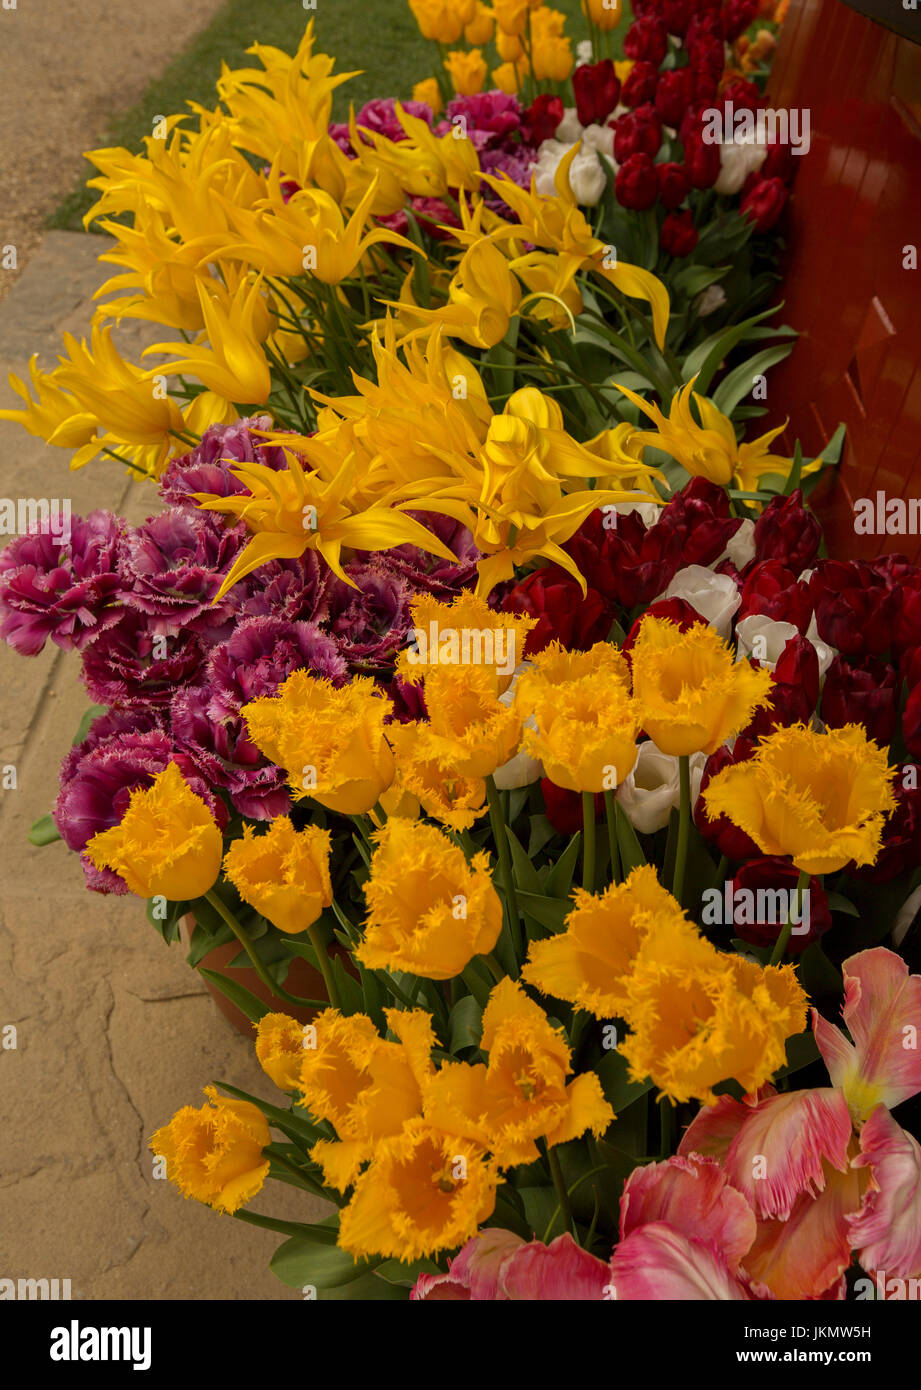 Masse gepflanzt Tulpen mit ungewöhnlichen und spektakulären Blumen - Tulpen mit doppelten roten Blüten und Rüschen eingefasst goldene gelbe Blüten, im englischen Garten Stockfoto